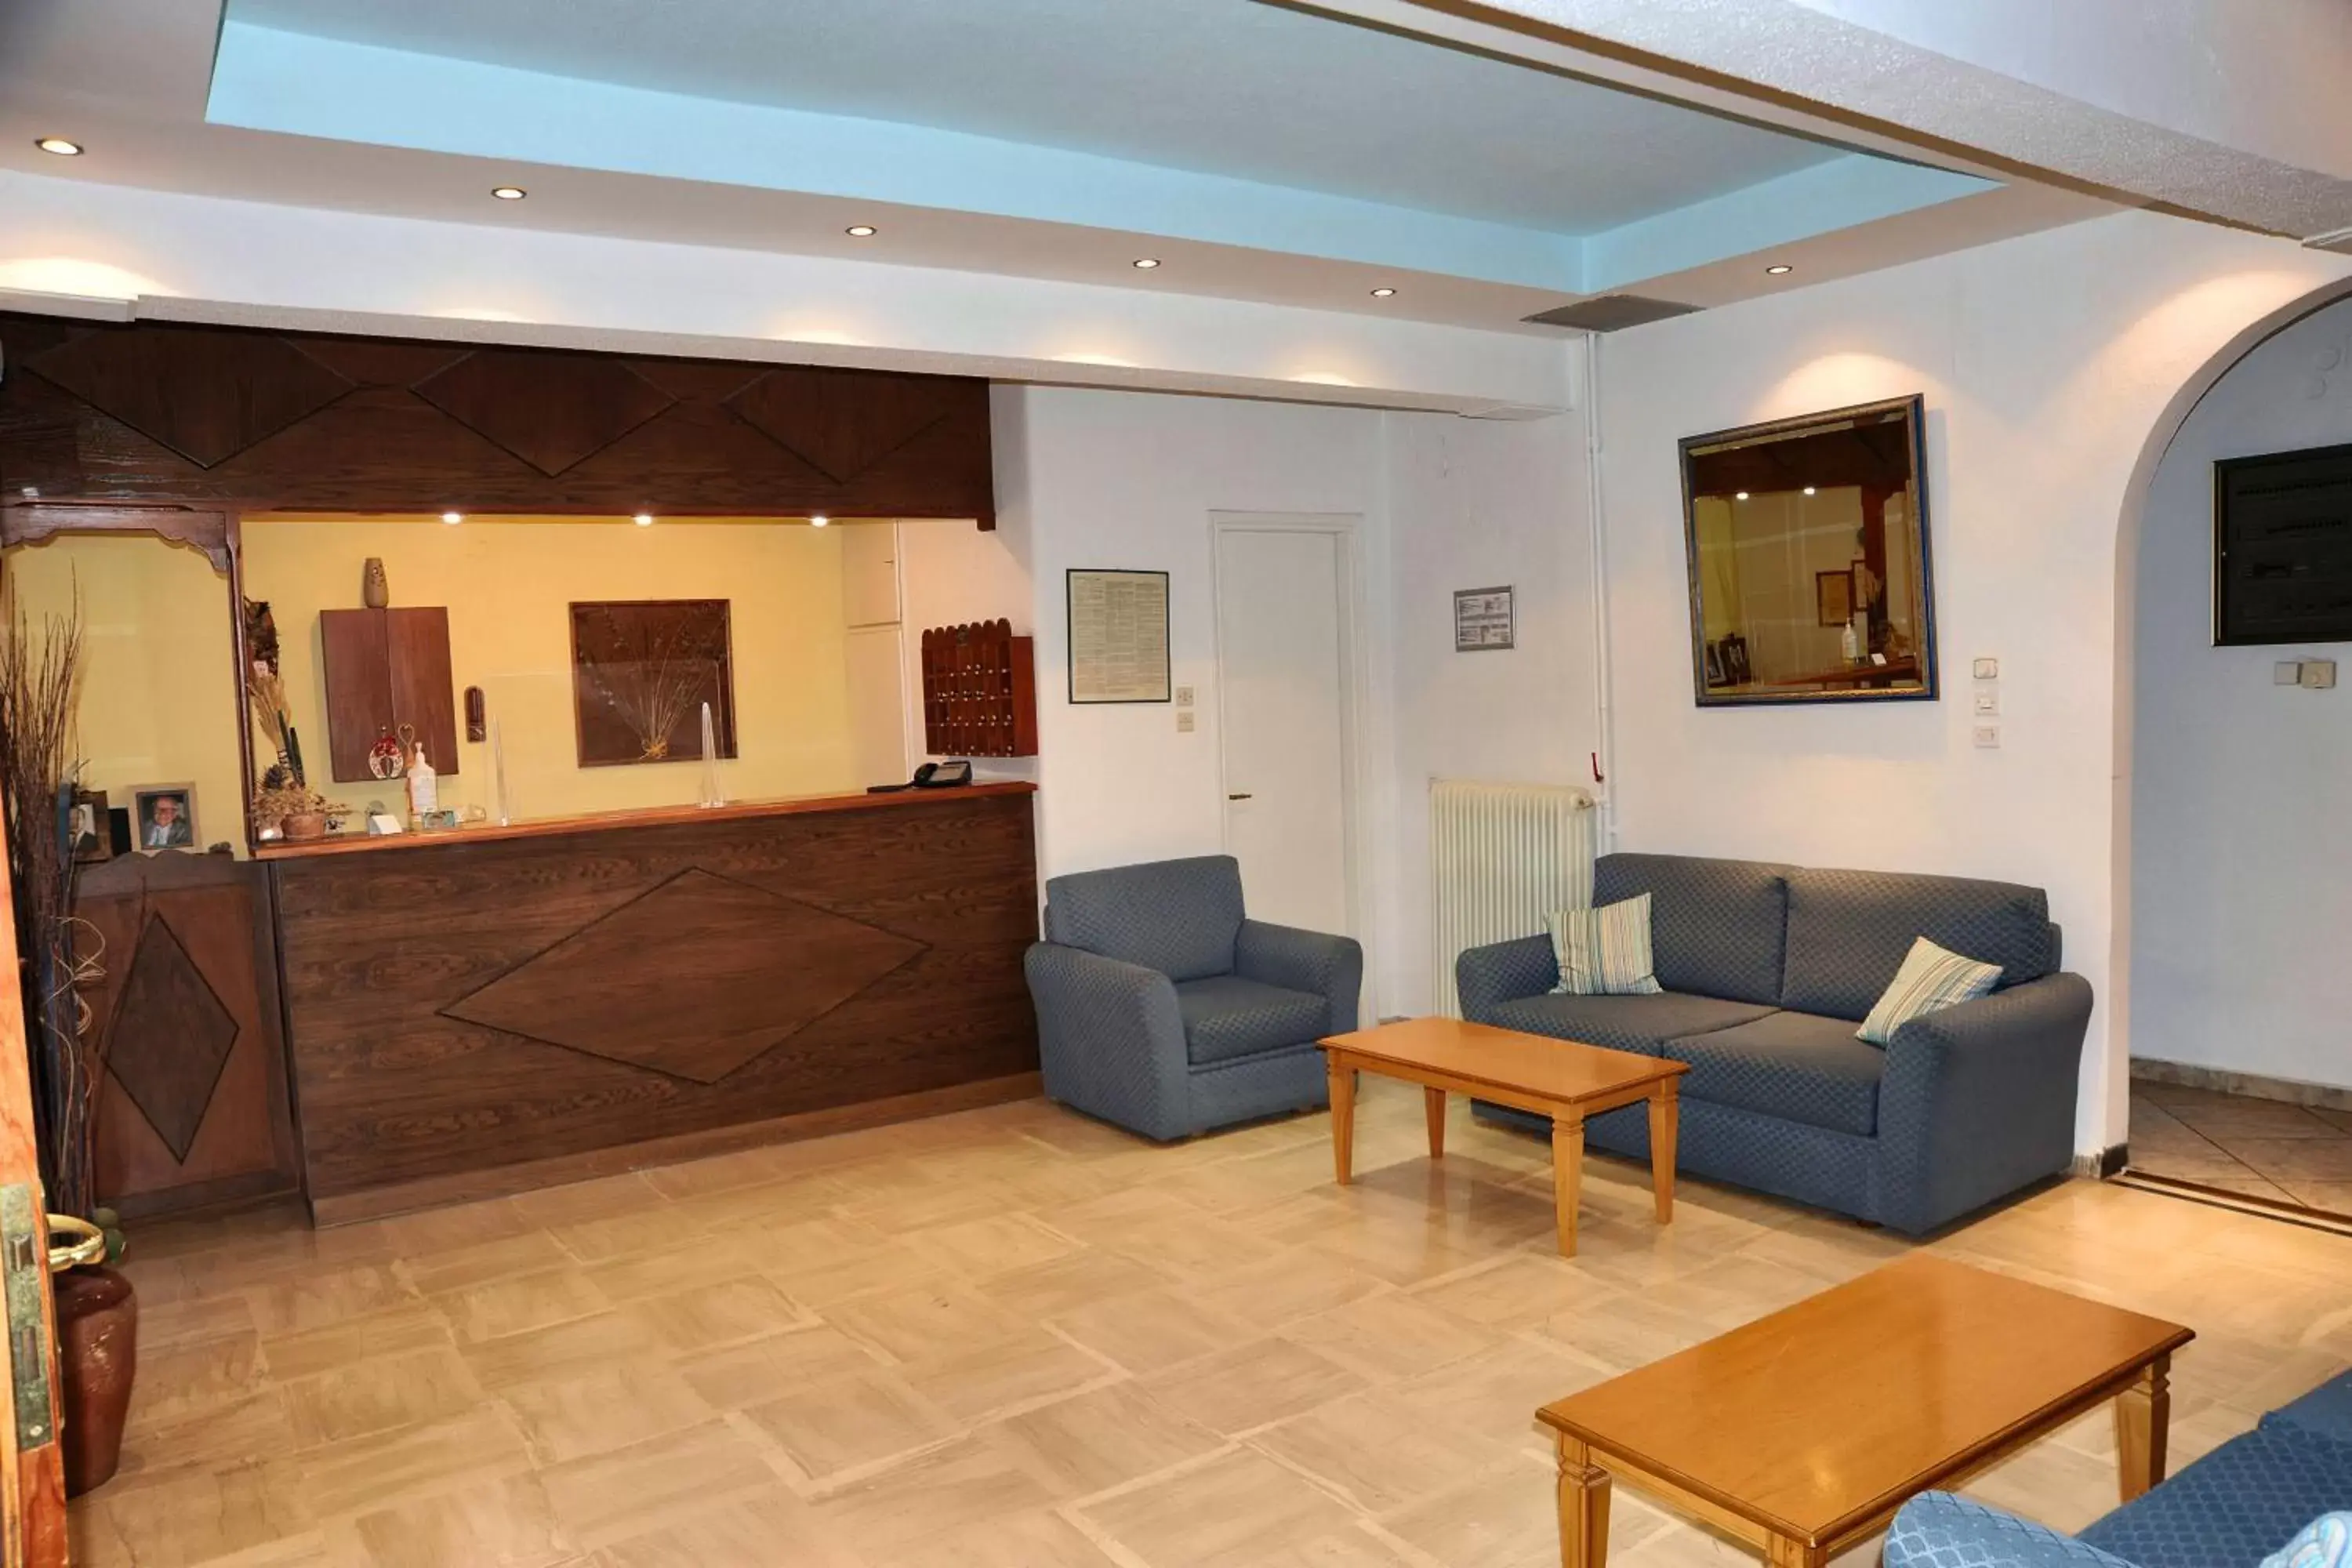 Lobby or reception, Lobby/Reception in Castri Hotel